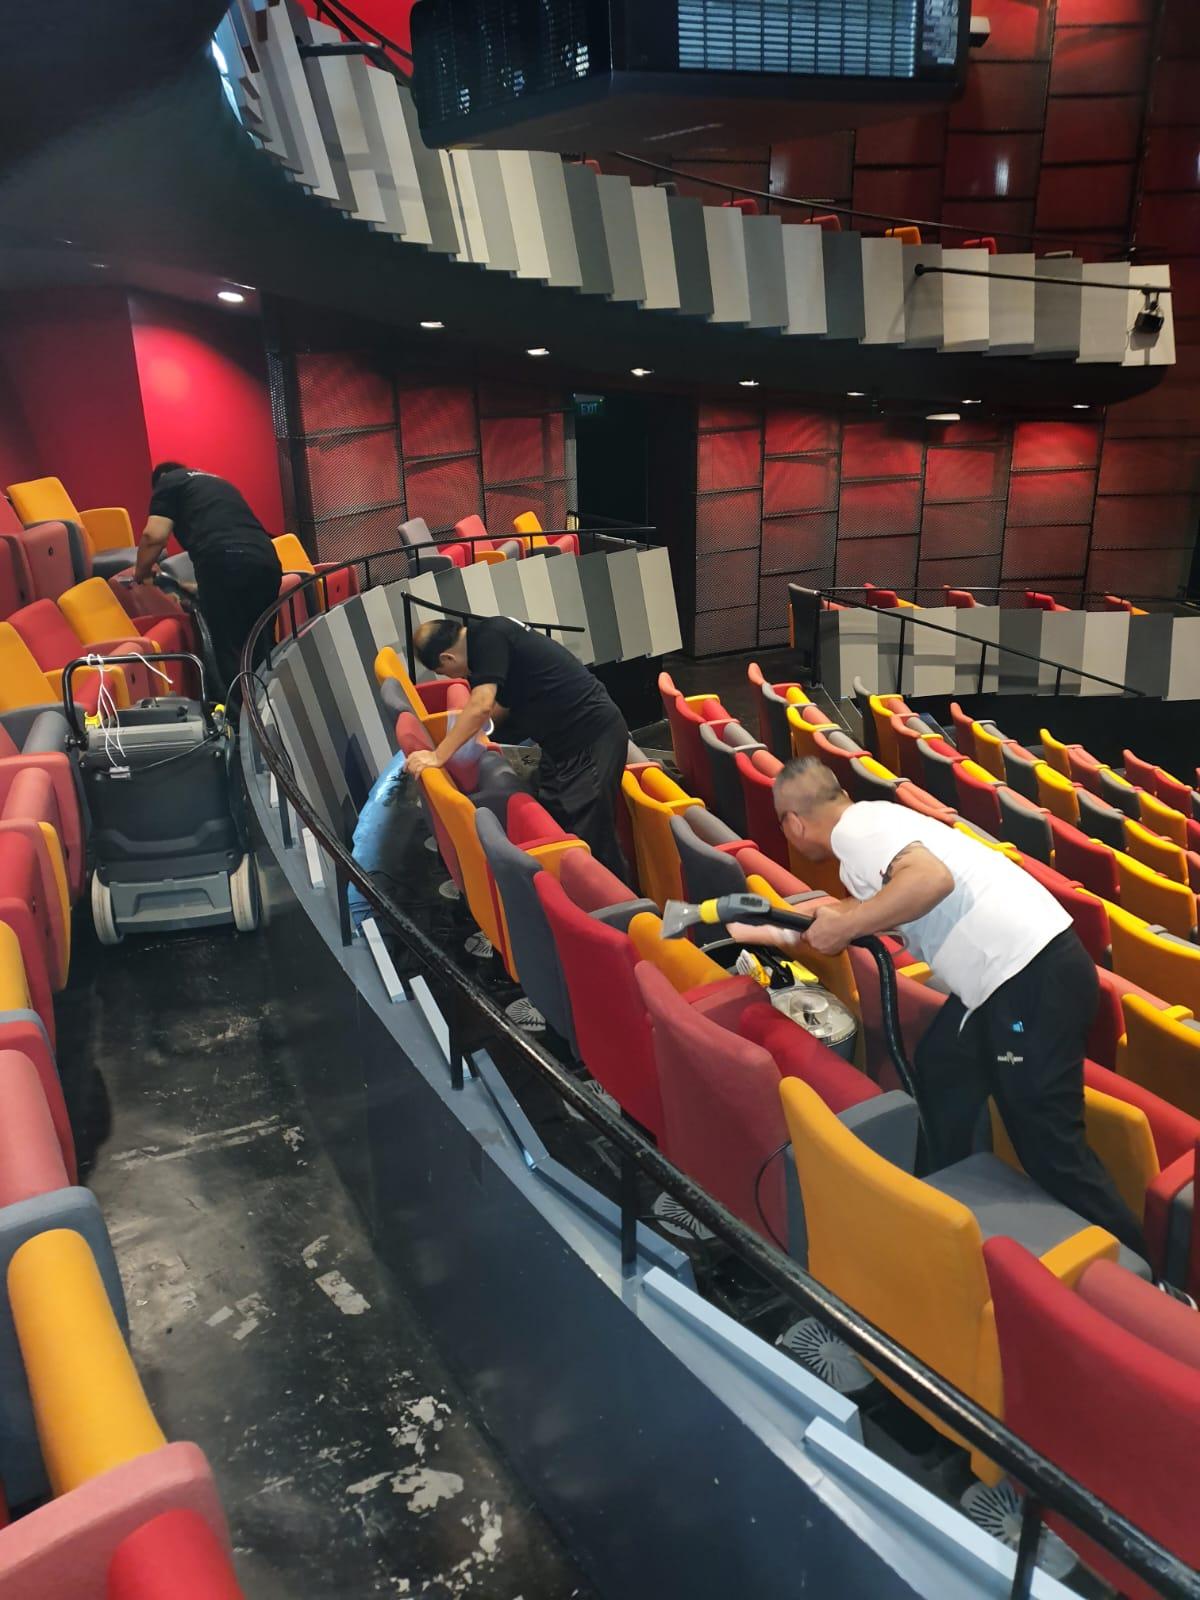 Cleaning of auditorium seats